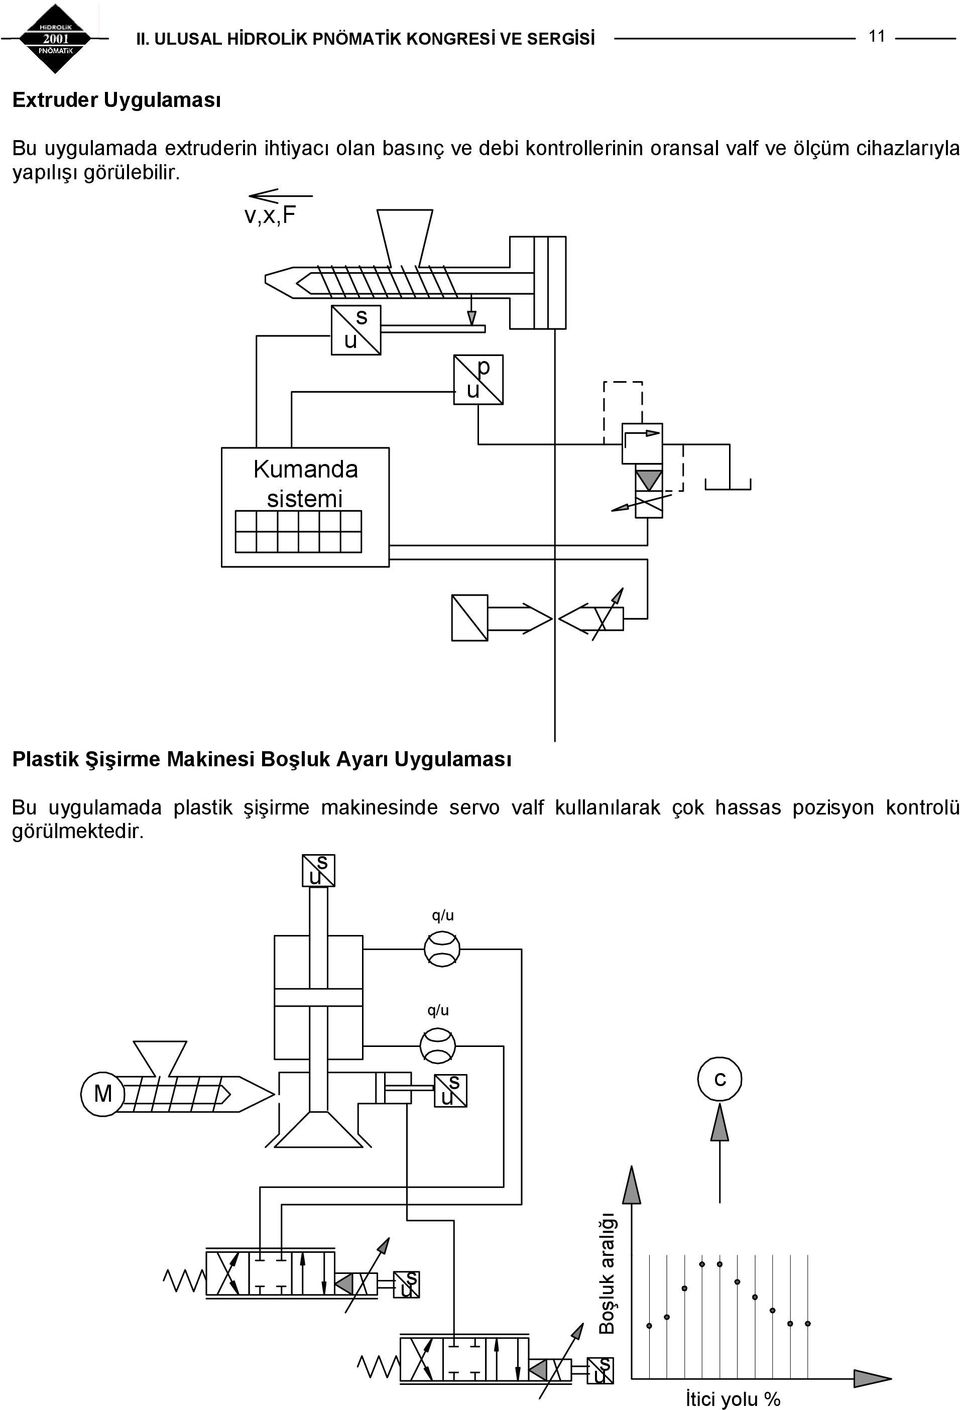 v,x,f s p Kmanda sistemi Plastik Şişirme Makinesi Boşlk Ayarı Uyglaması B yglamada plastik